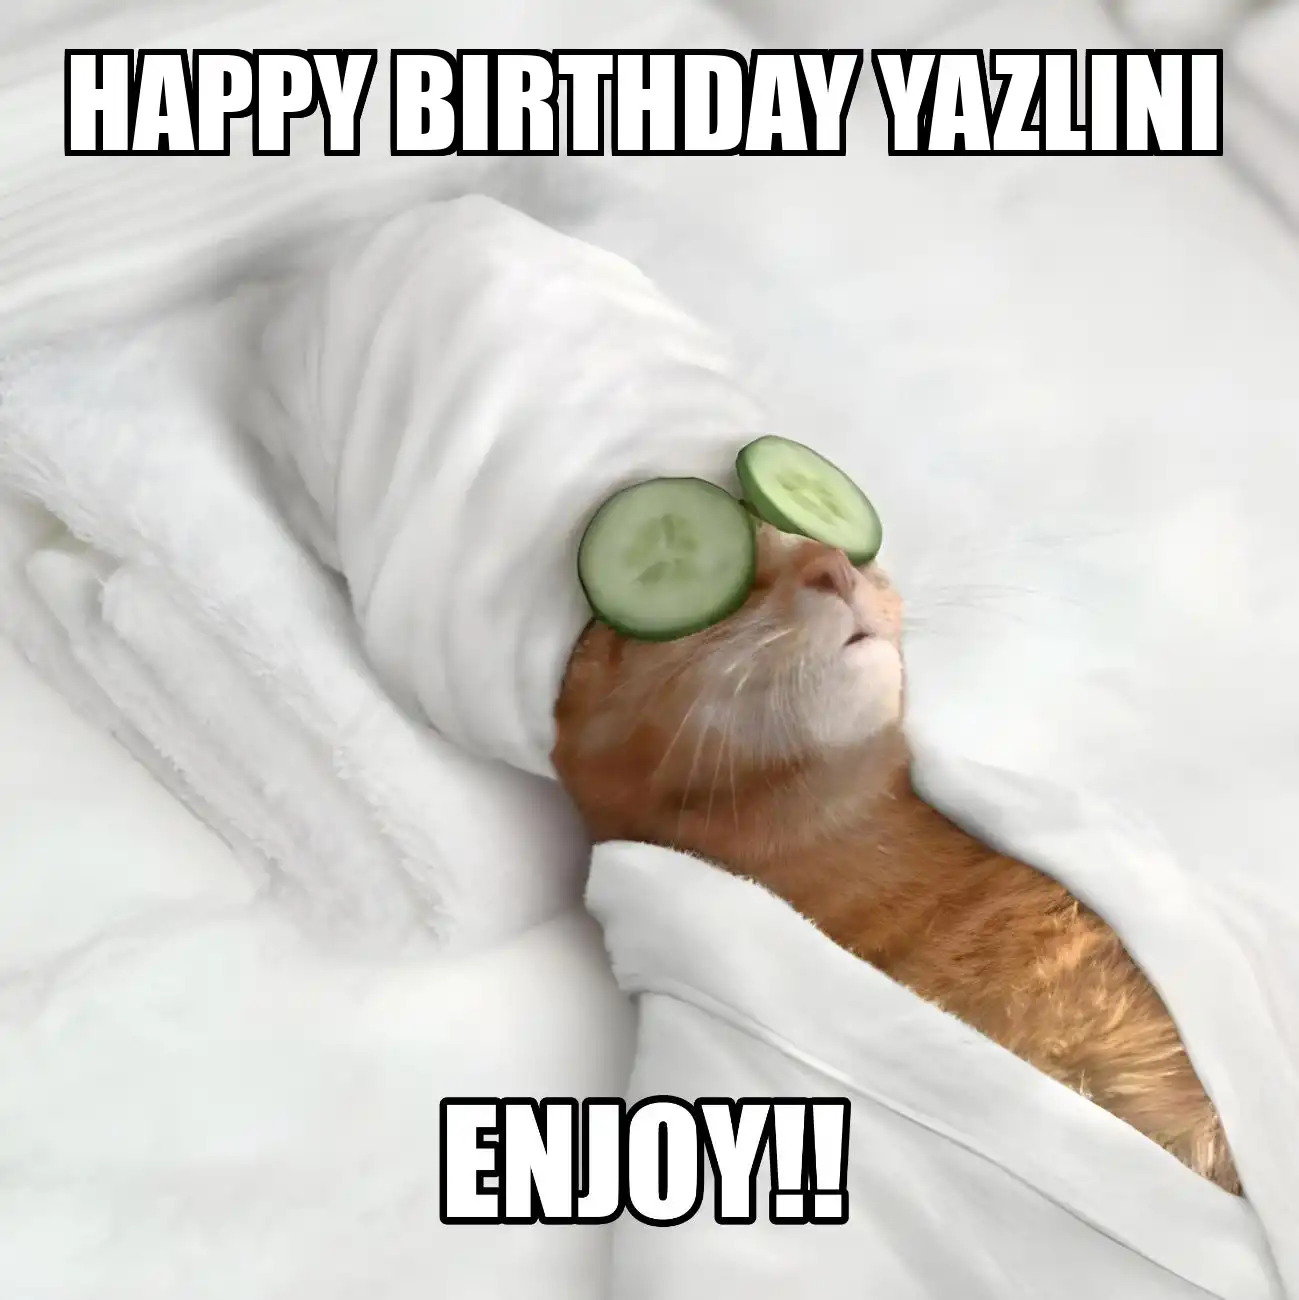 Happy Birthday Yazlini Enjoy Cat Meme